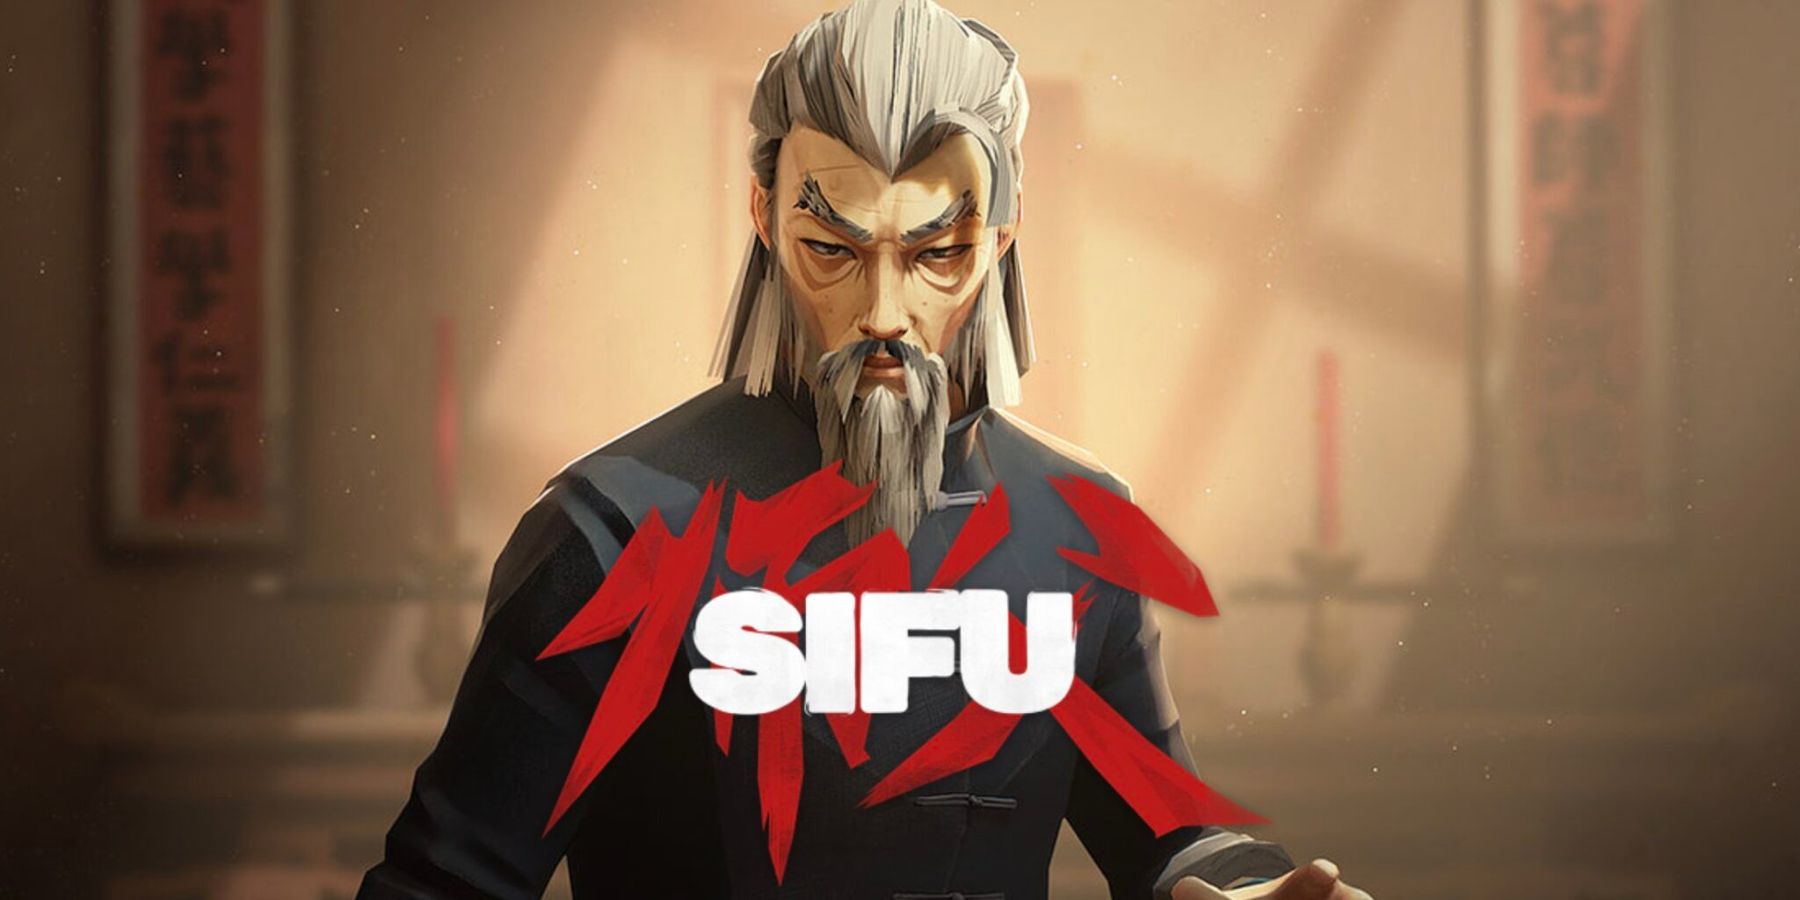 sifu review